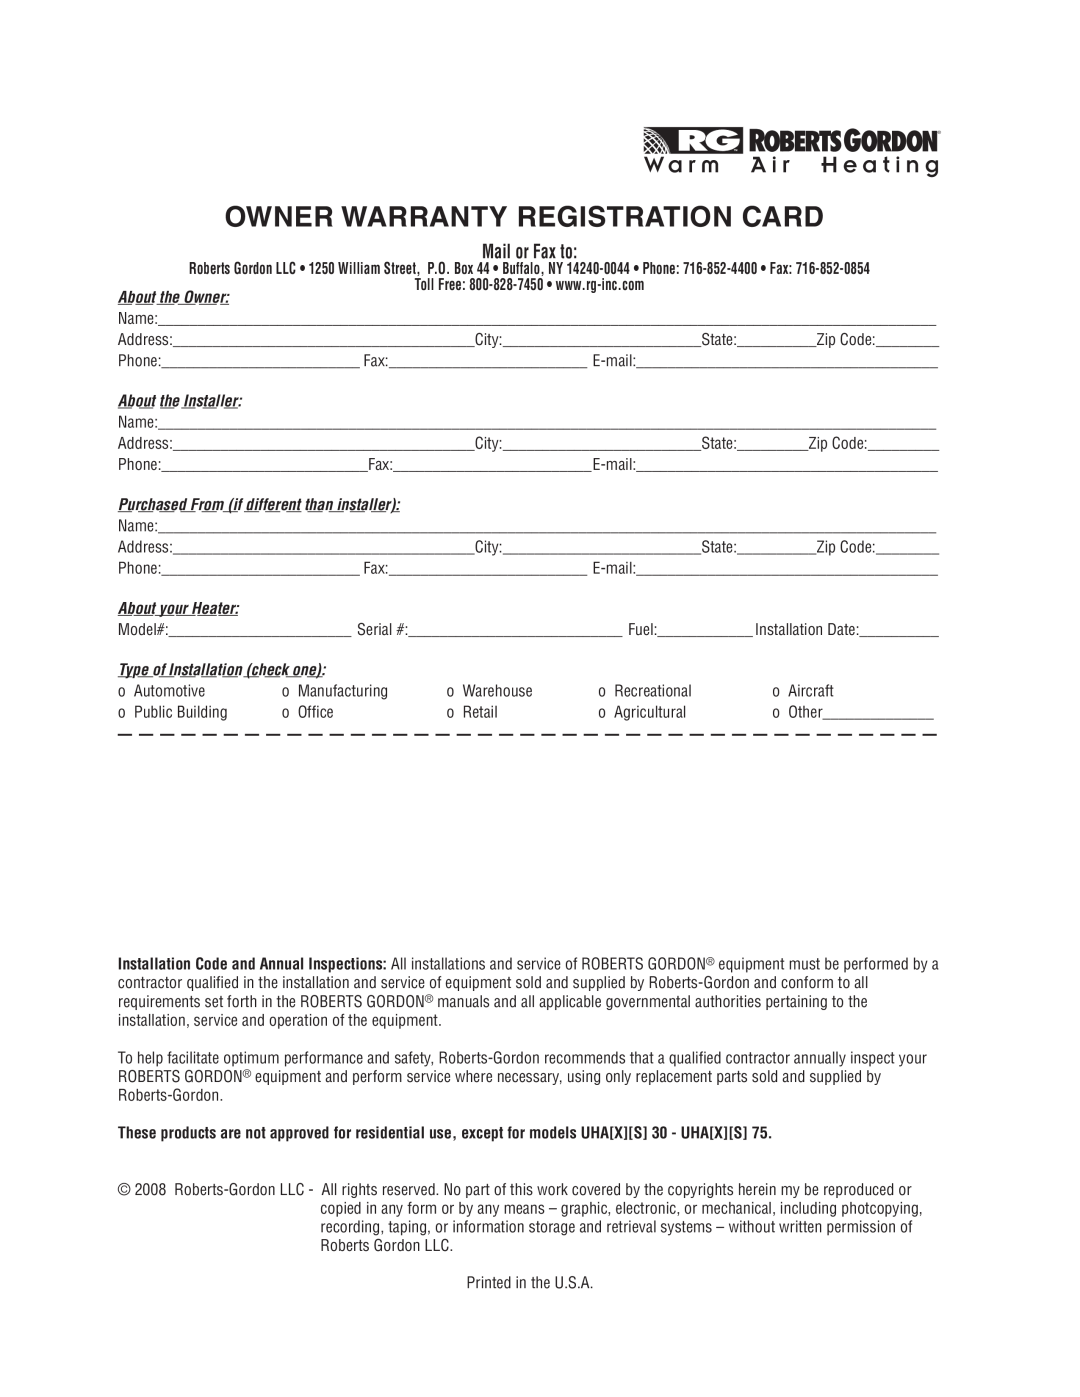 Roberts Gorden UHA[X][S] 75, UHA[X][S] 45 Owner Warranty Registration Card, W a r m, A i r H e a t i n g, About the Owner 